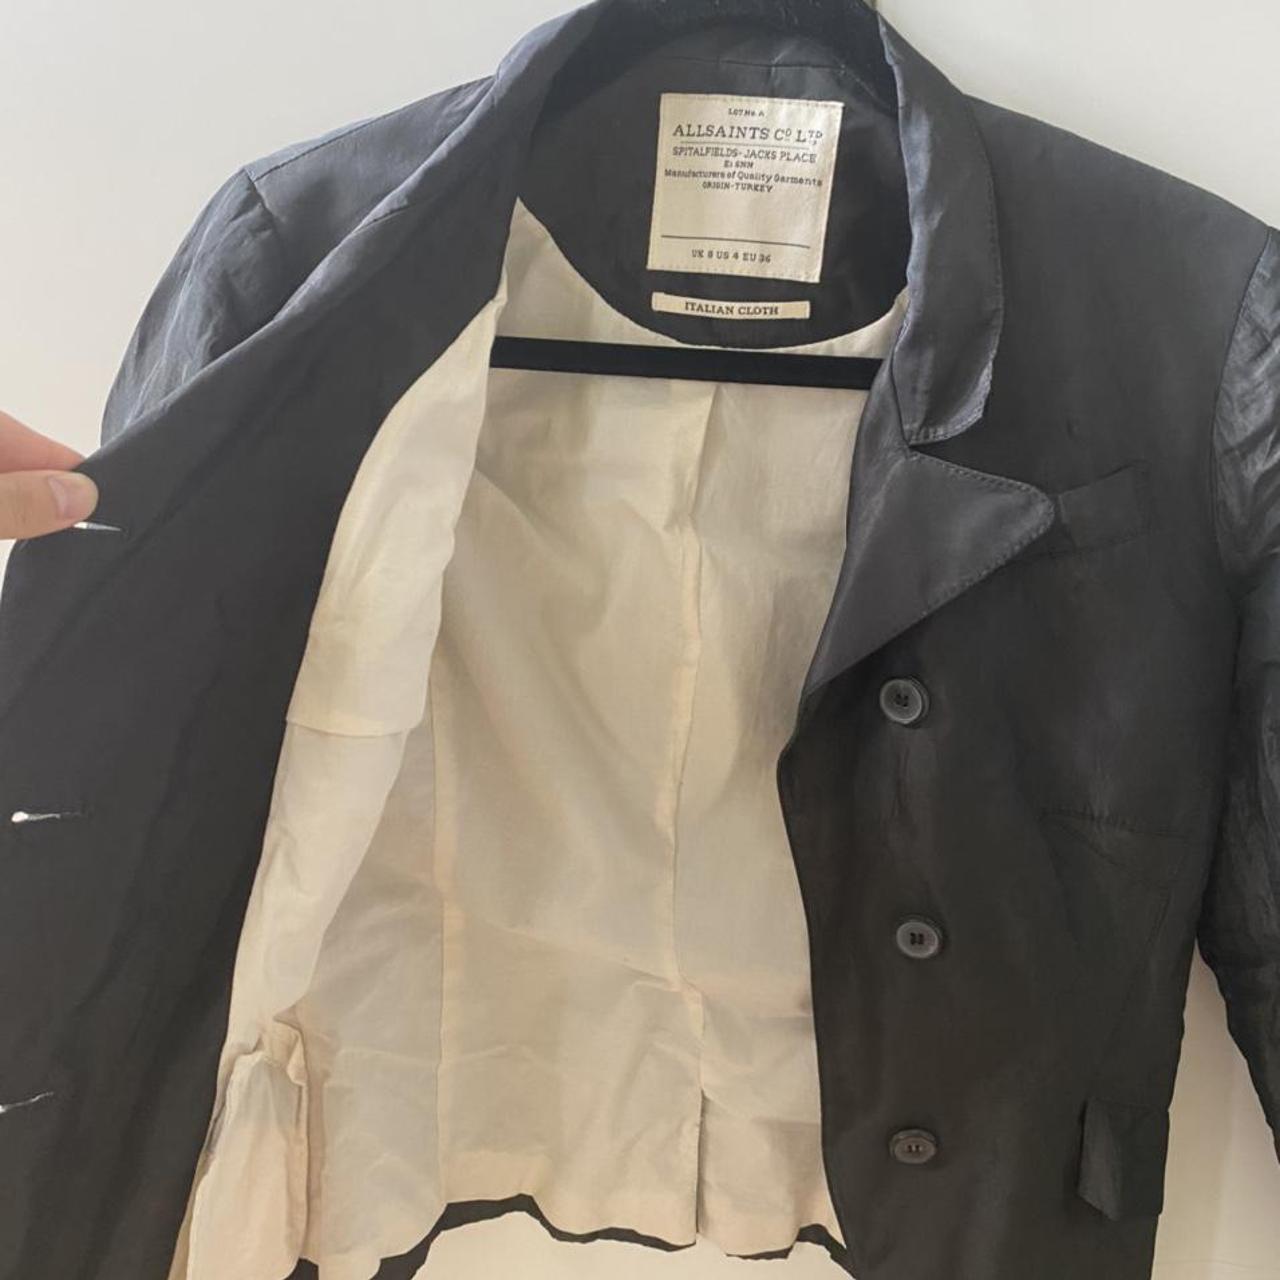 Stunning, vintage and 100% genuine AllSaints jacket... - Depop